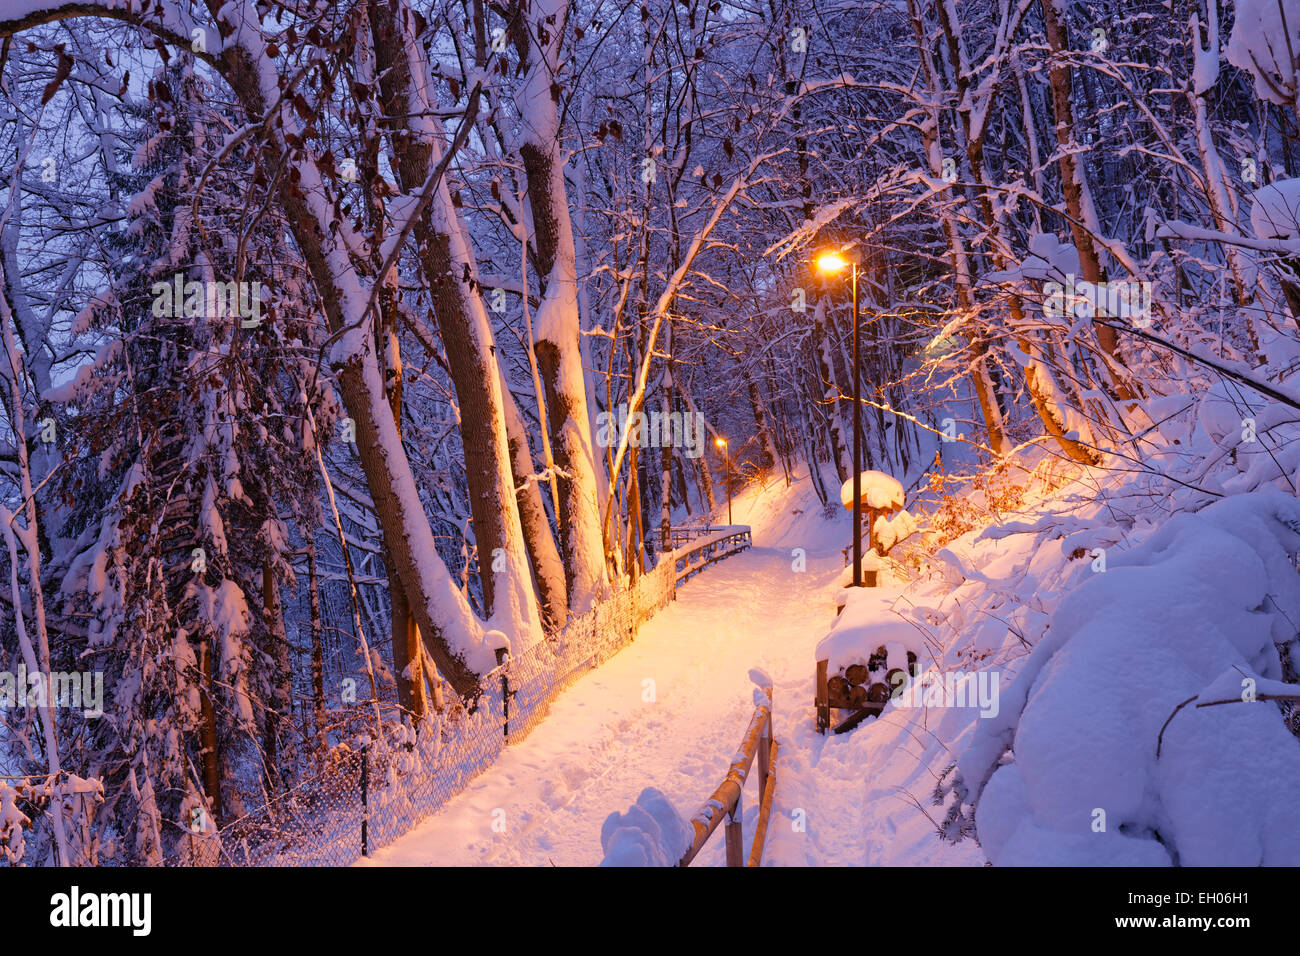 Alemania, Baviera, Wolfratshausen, ruta iluminada en invierno bosque Foto de stock